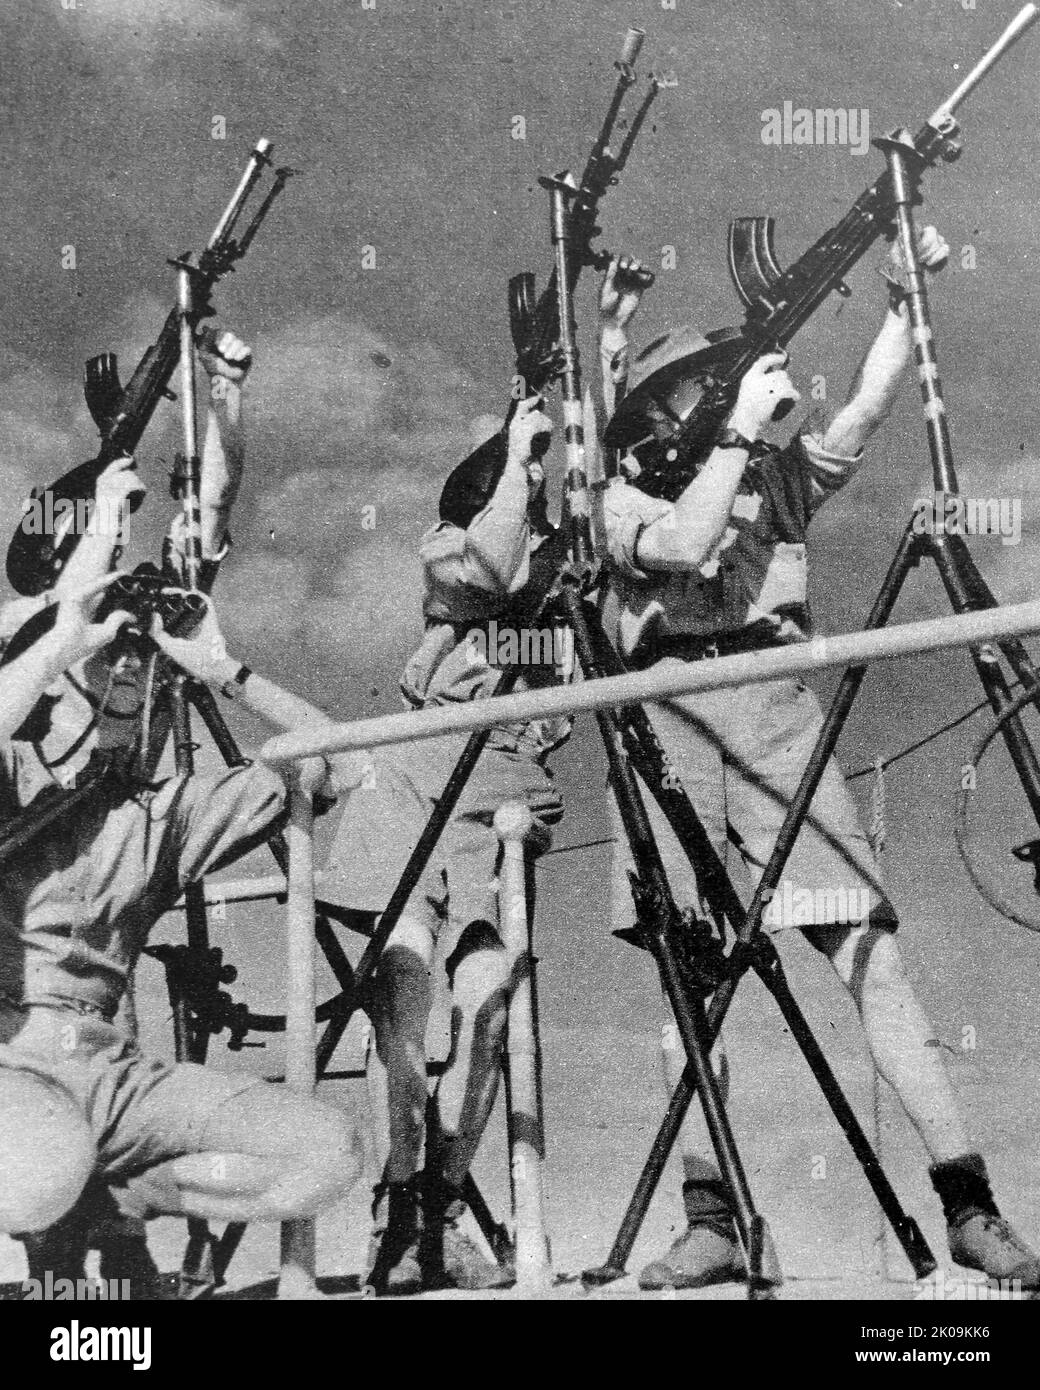 Le truppe dell'esercito britannico armano pistole automatiche per scoraggiare attacchi aerei improvvisi da parte di aerei di guerra italiani o tedeschi su una nave da guerra durante la seconda guerra mondiale Foto Stock